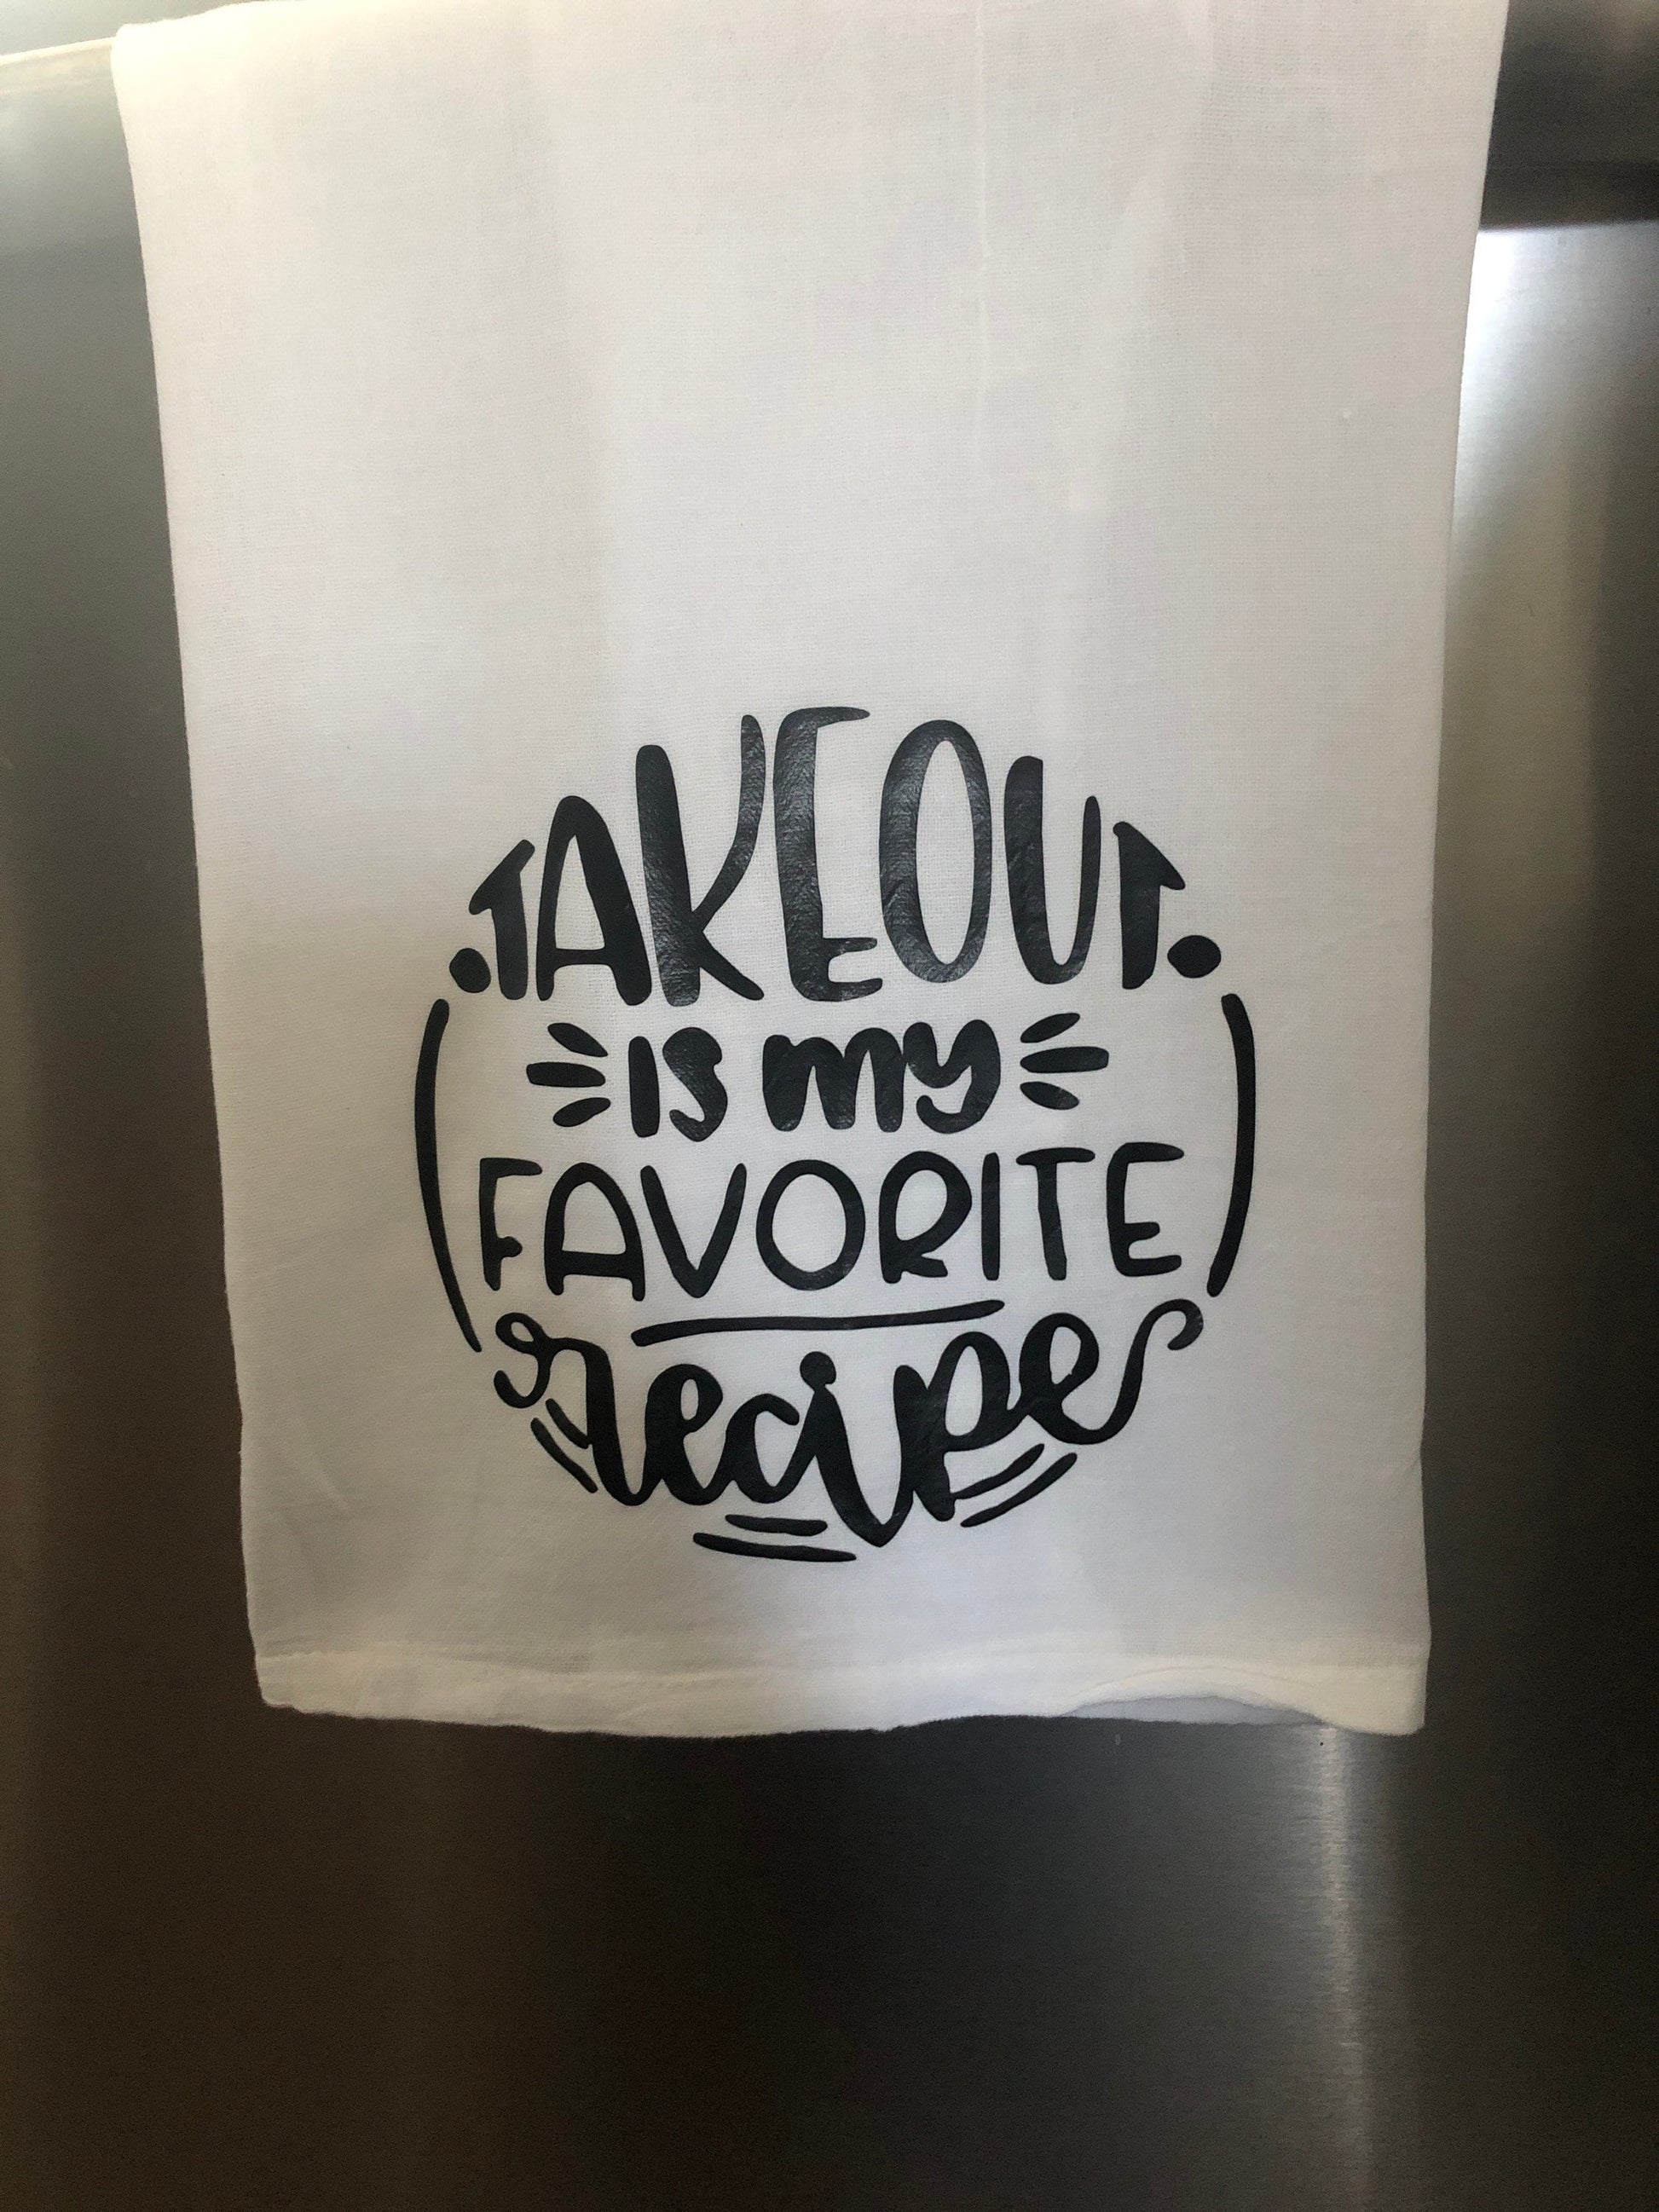 Funny Kitchen Tea Towels - Alexa, Do The Dishes - Humorous Flour